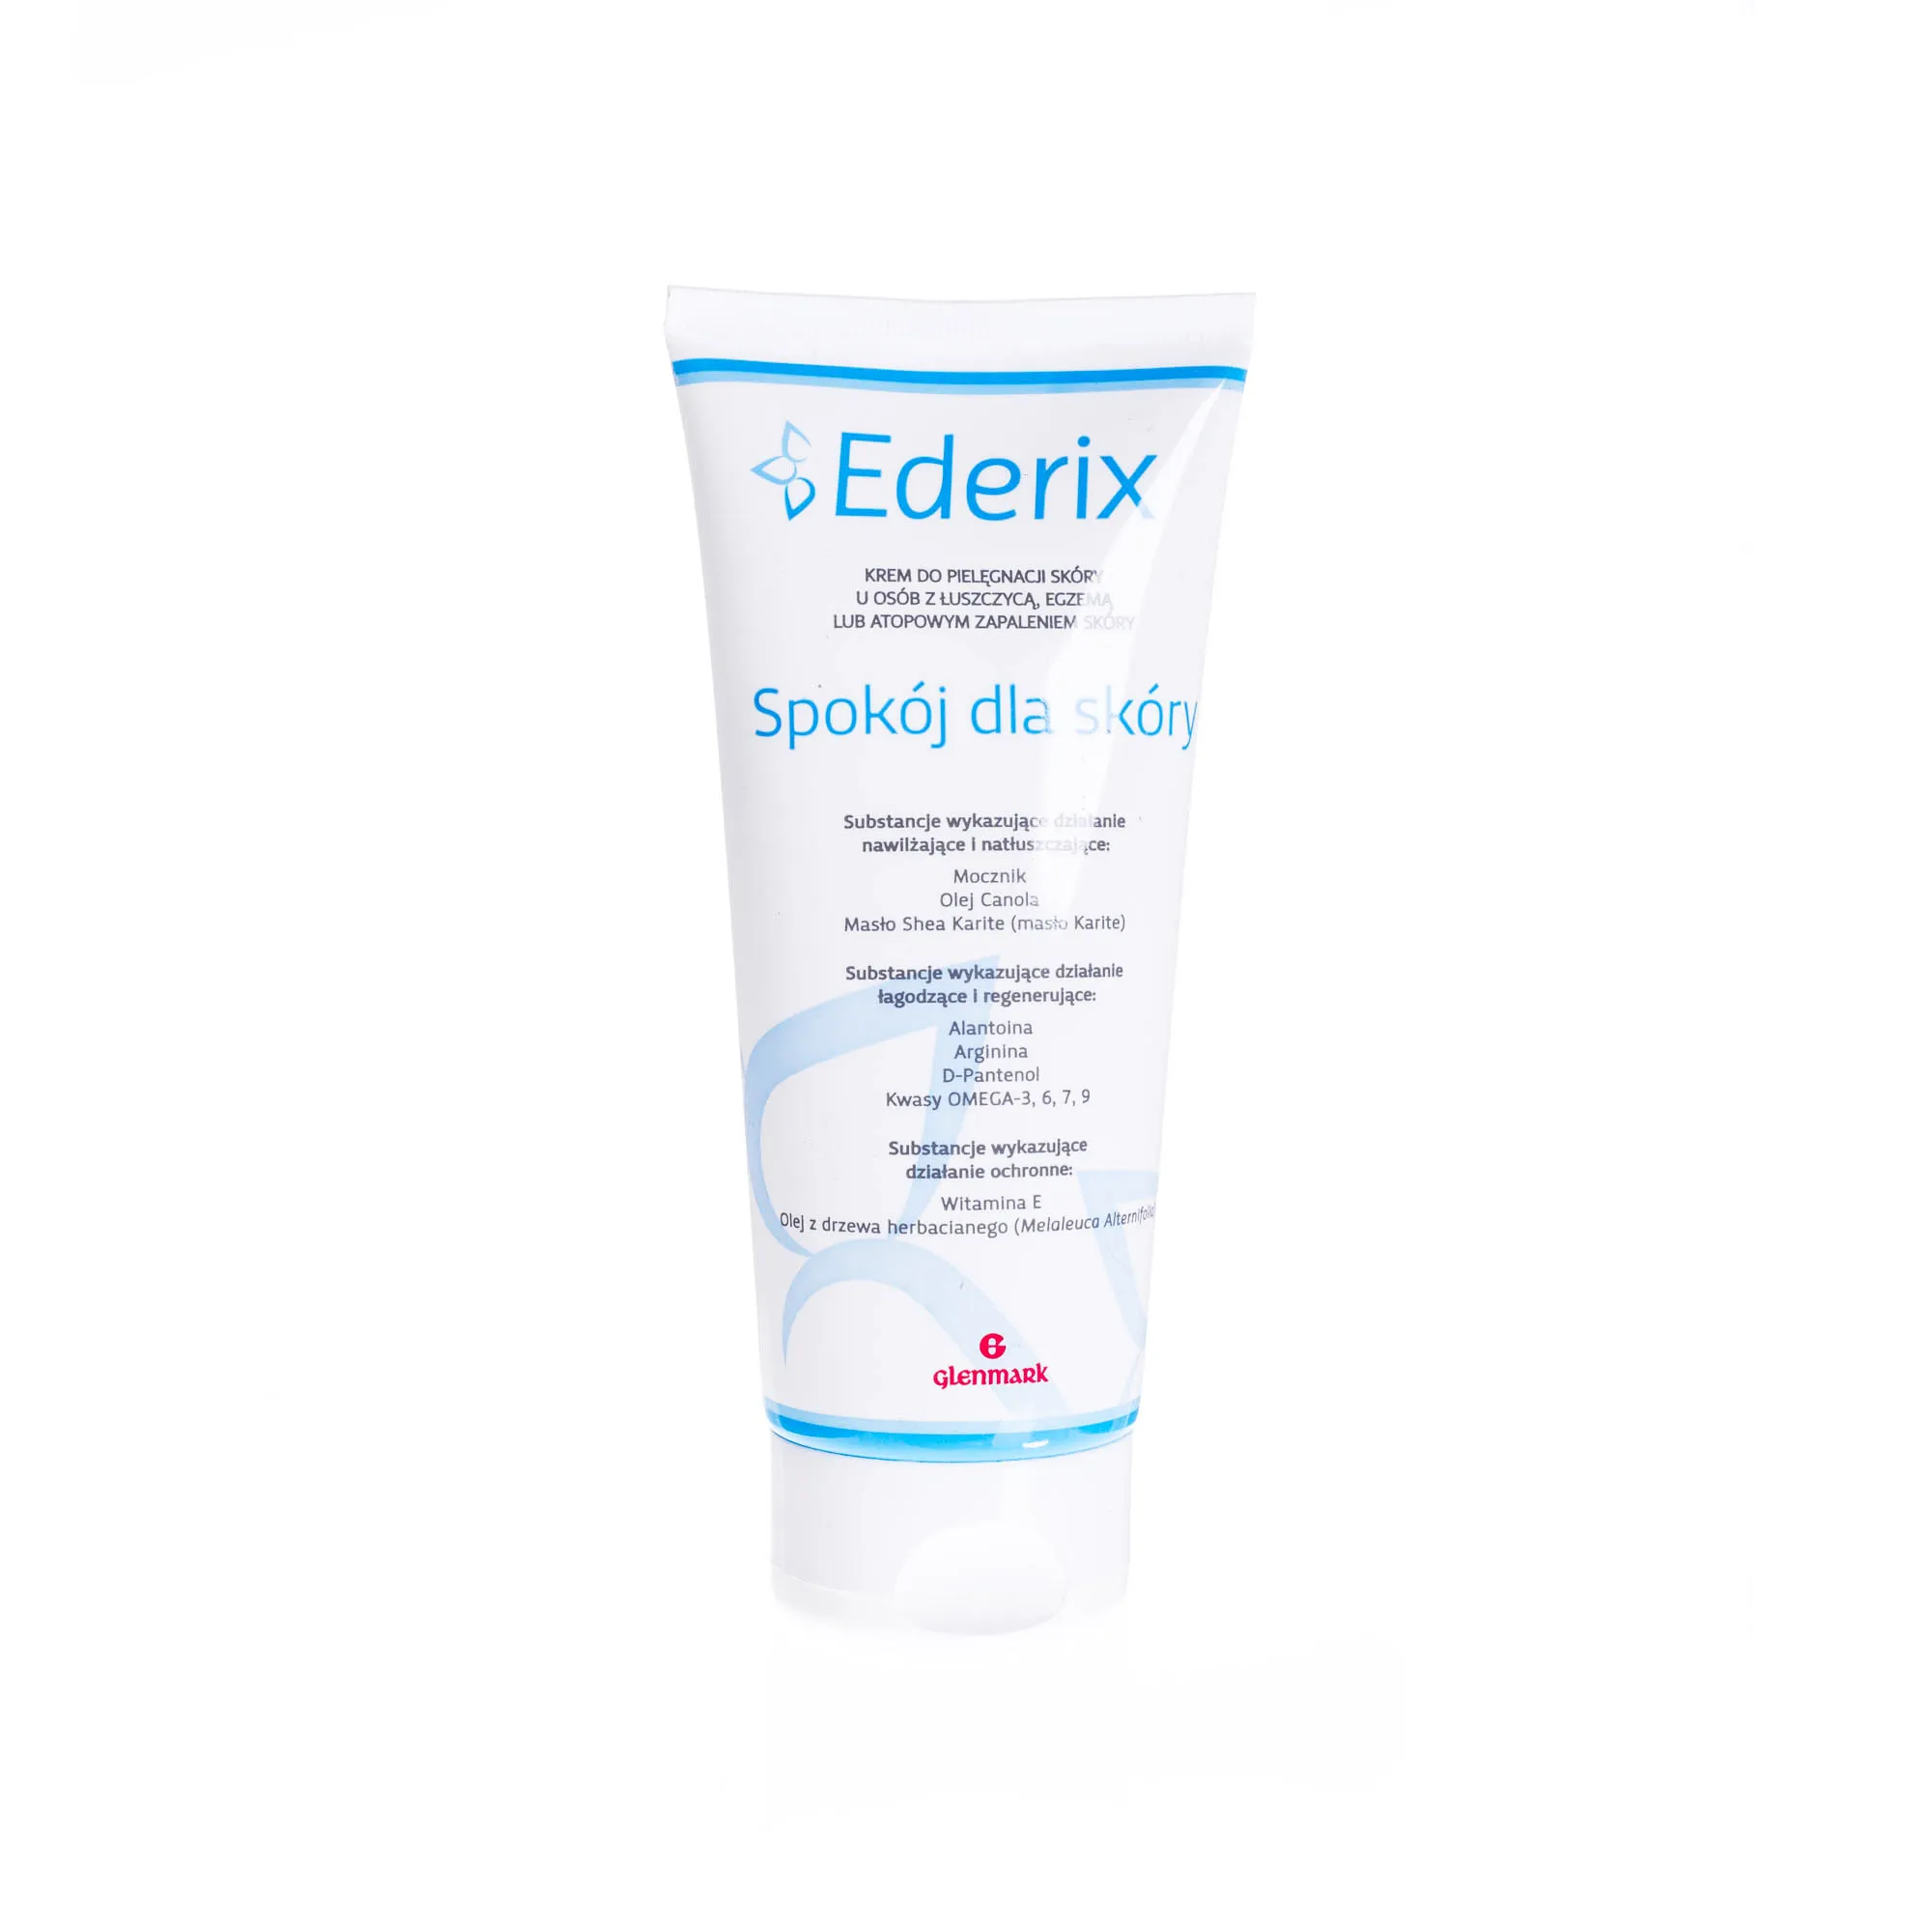 Ederix krem do pielęgnacji skóry u osób z łuszczycą, egzemą lub atopowym zapaleniem skóry 200 ml 